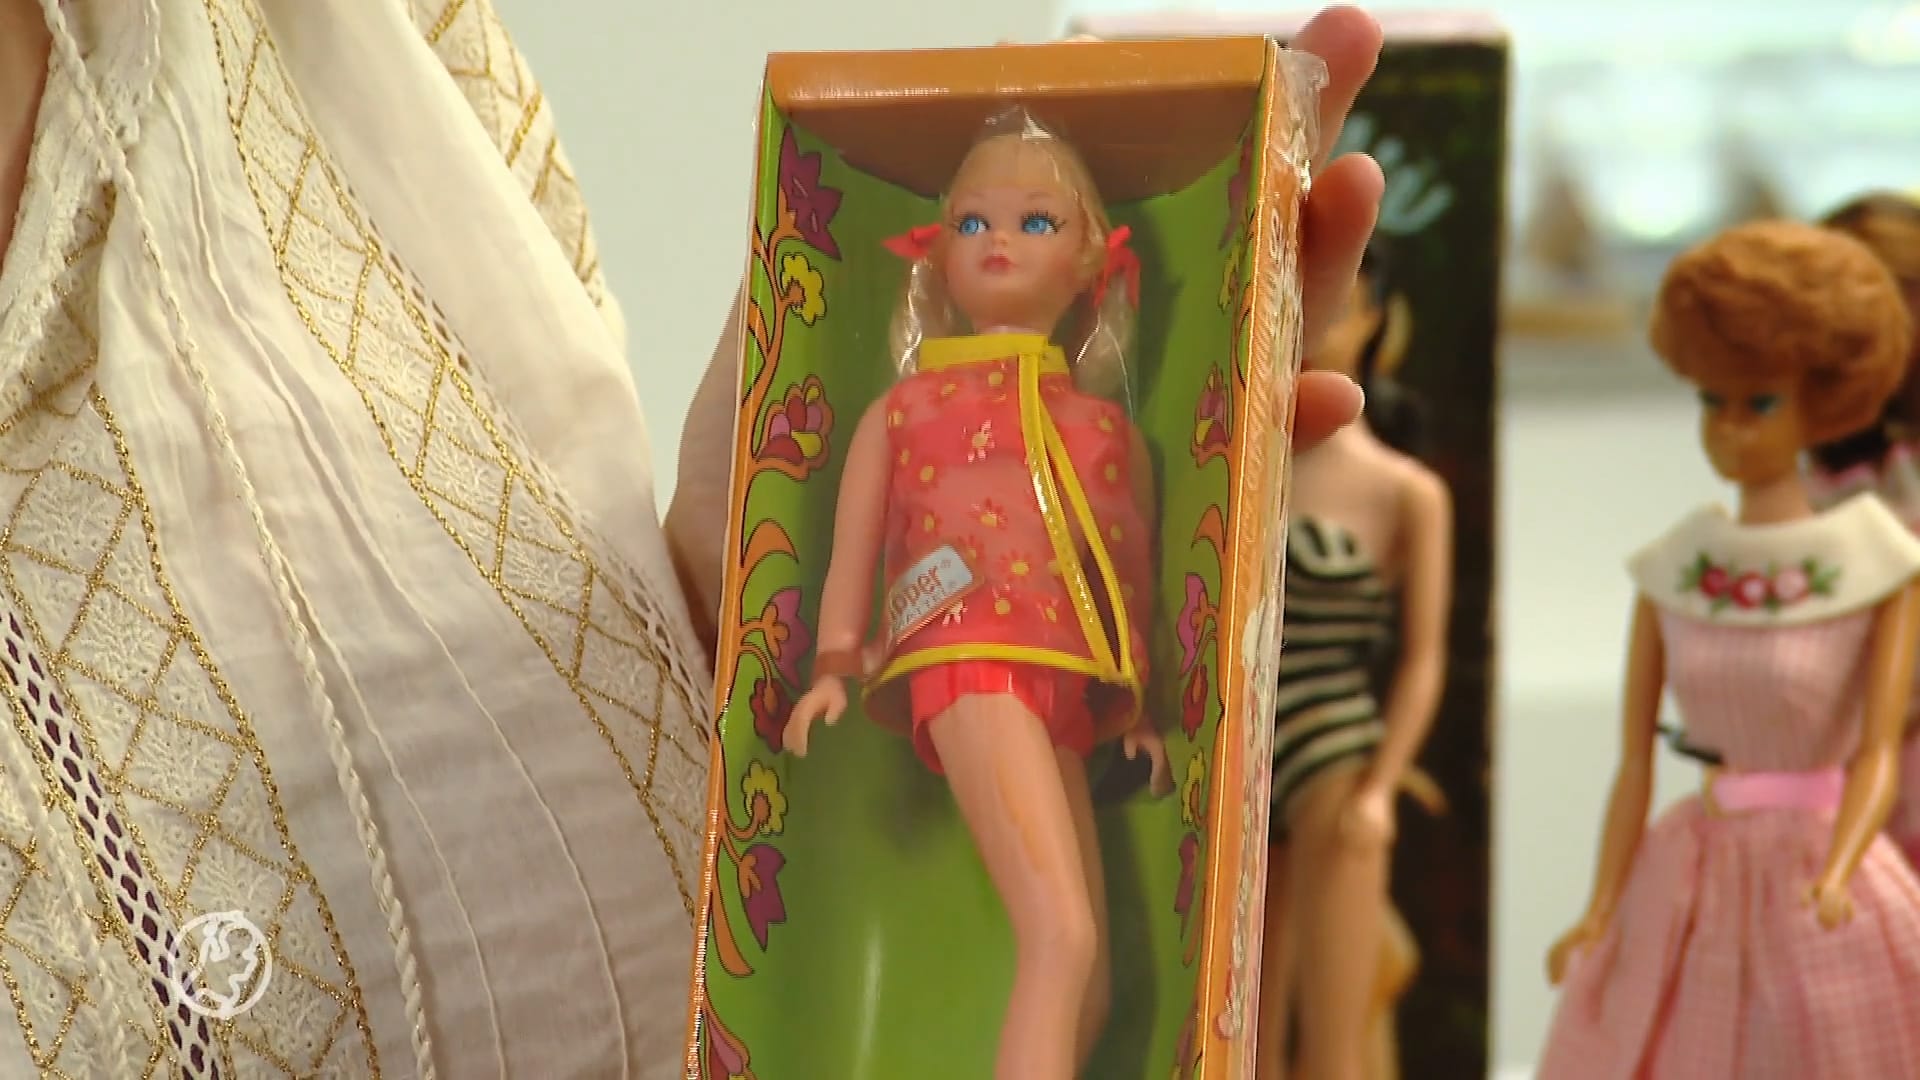 Barbie-hype ook merkbaar op Marktplaats: vraag en aanbod stijgt